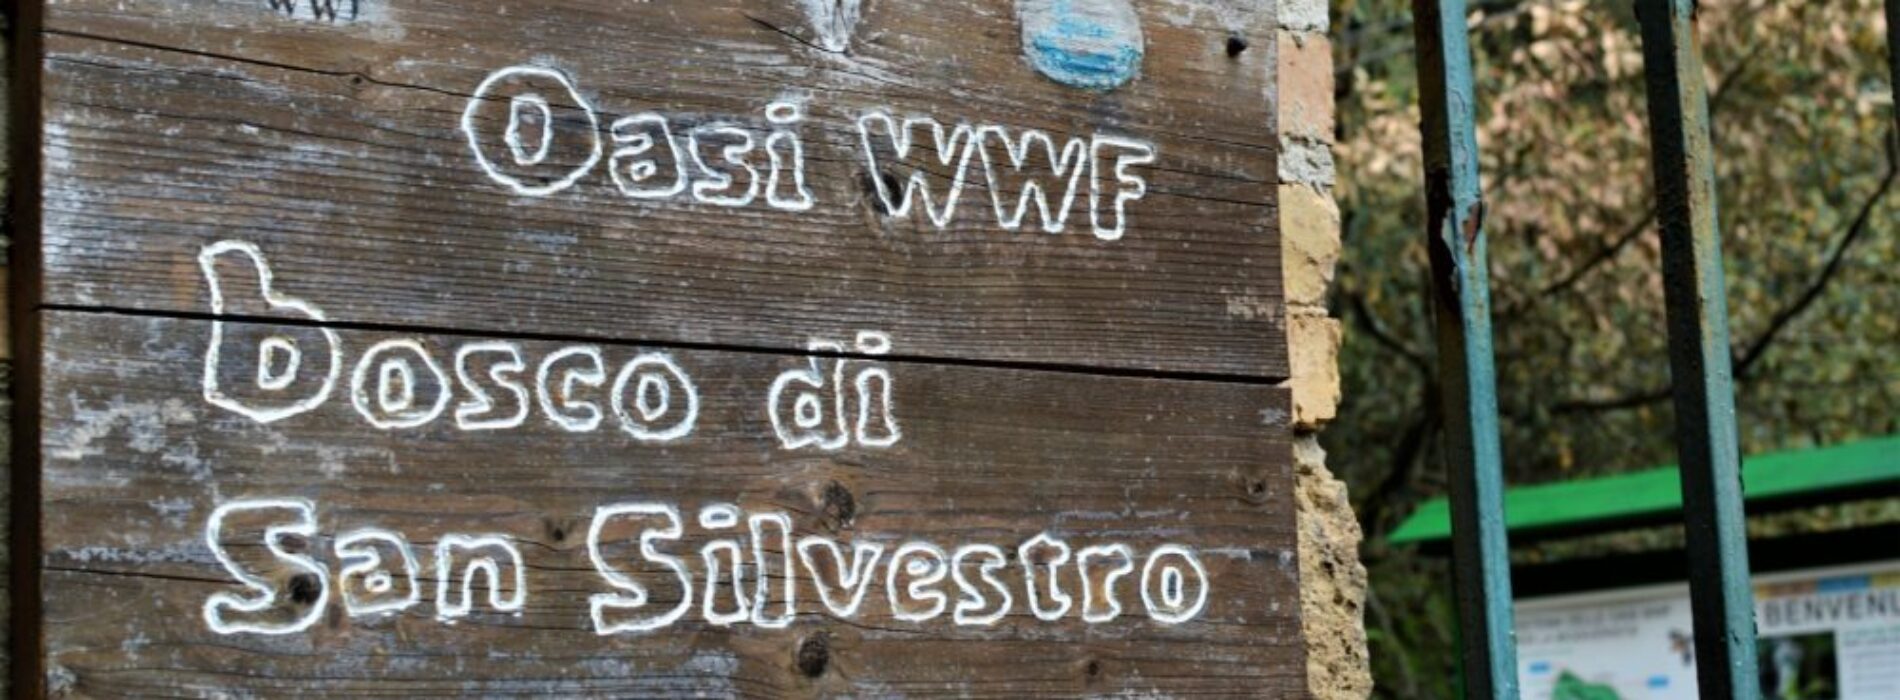 Festa dell’Albero, passeggiata letteraria all’Oasi Wwf Caserta